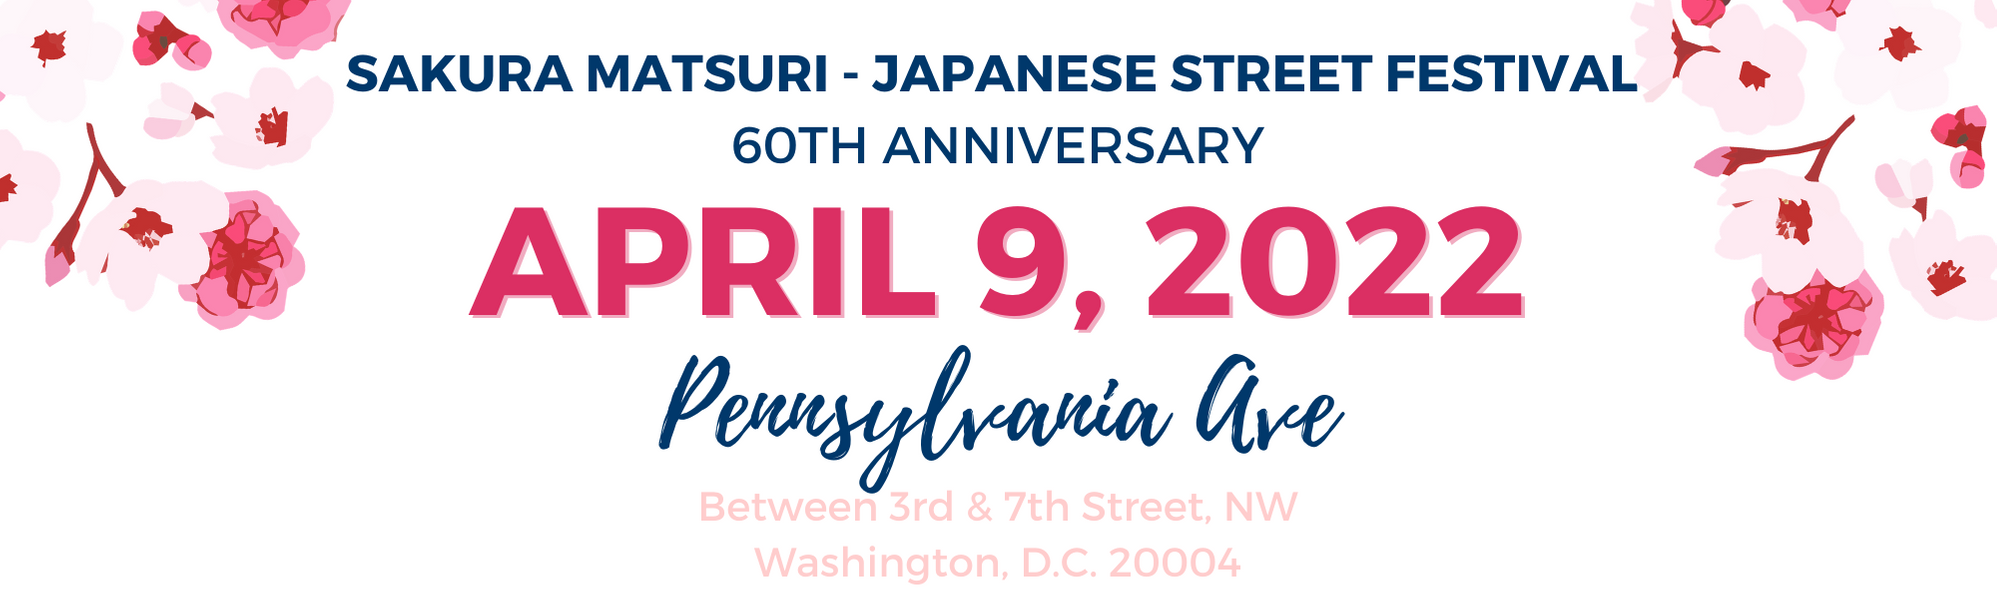 2022 Japanese Street Festival